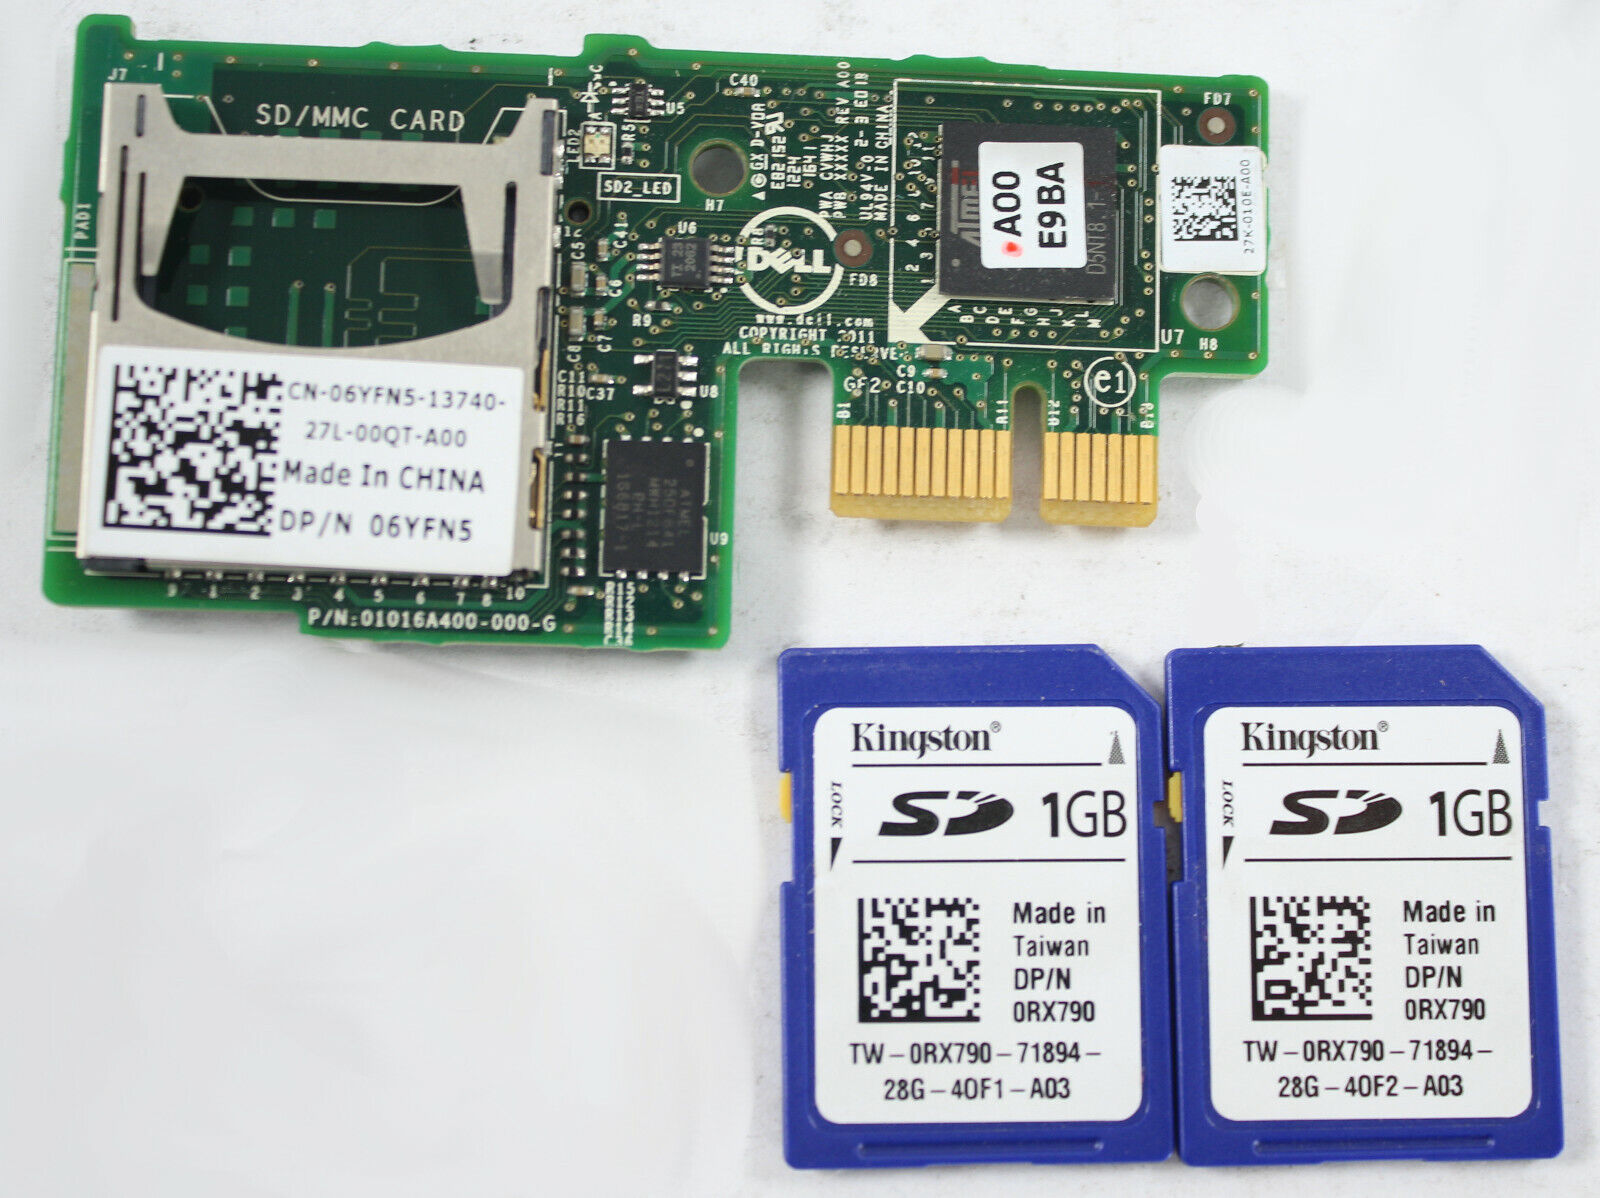 Dell 6YFN5 Internal Dual SD MMC Card Module Reader +2x 2GB Kingston SD Card